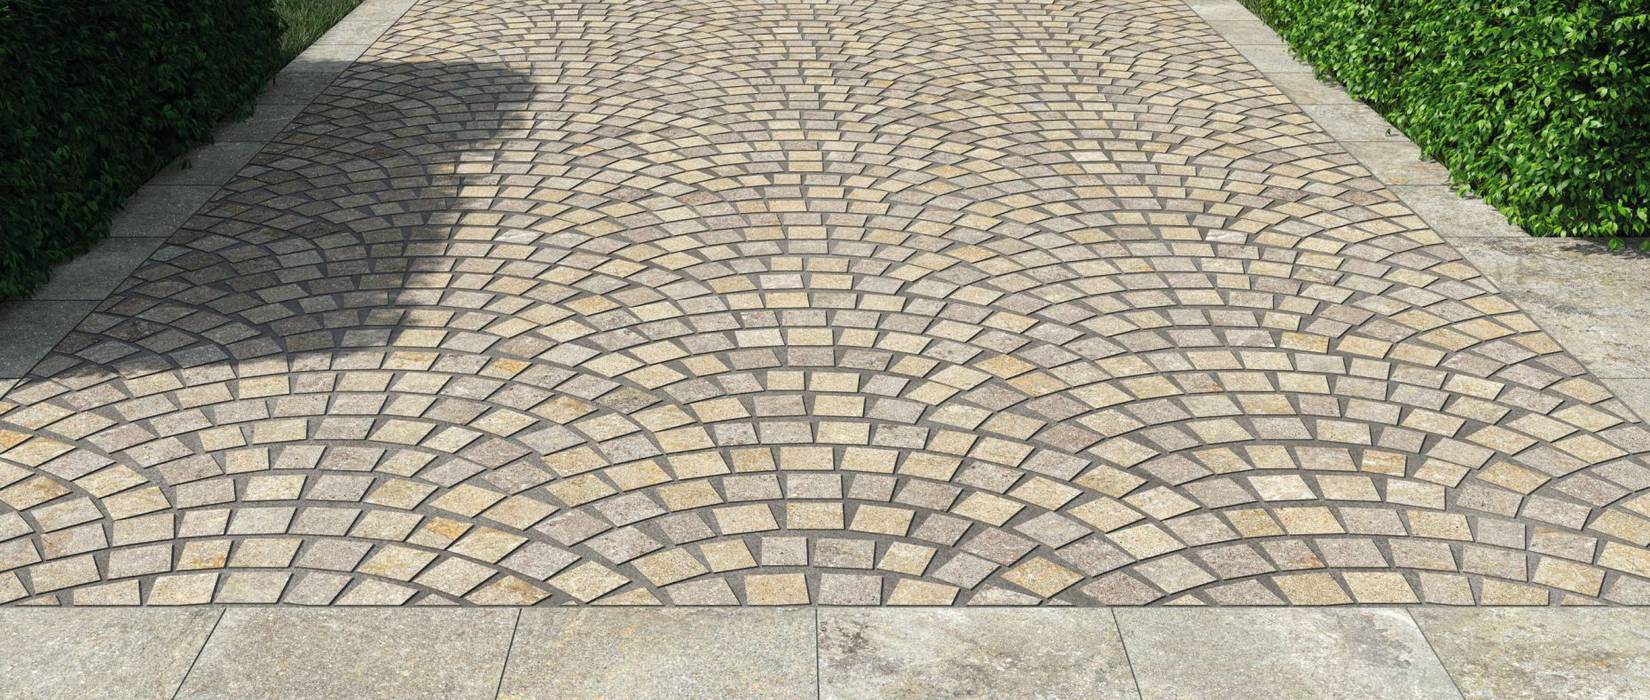 Piastrelle effetto pietra per pavimenti esterni